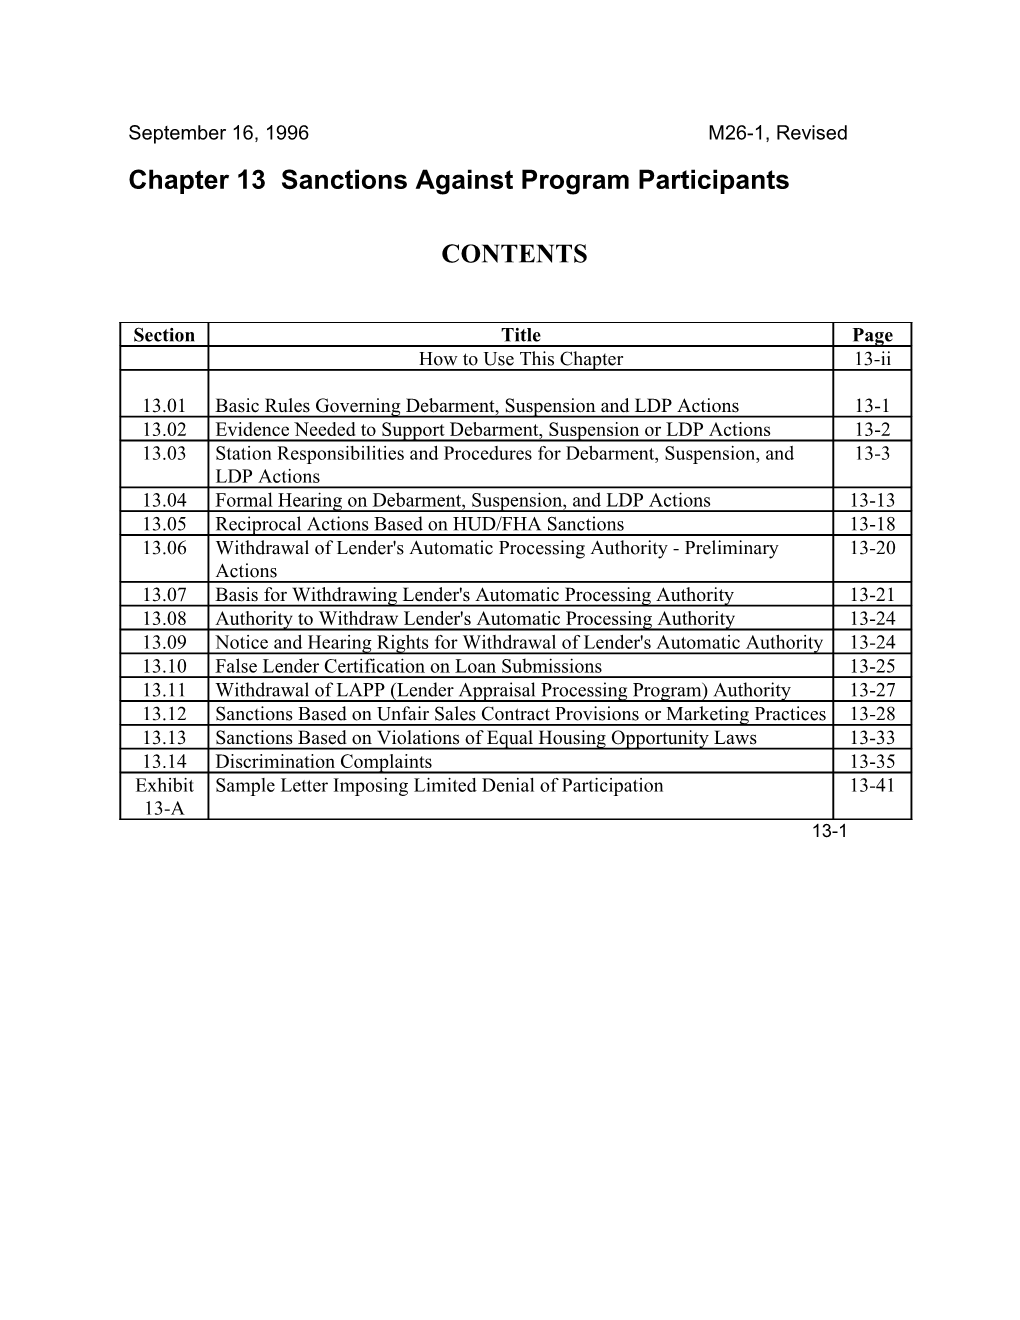 Chapter 13 Sanctions Against Program Participants